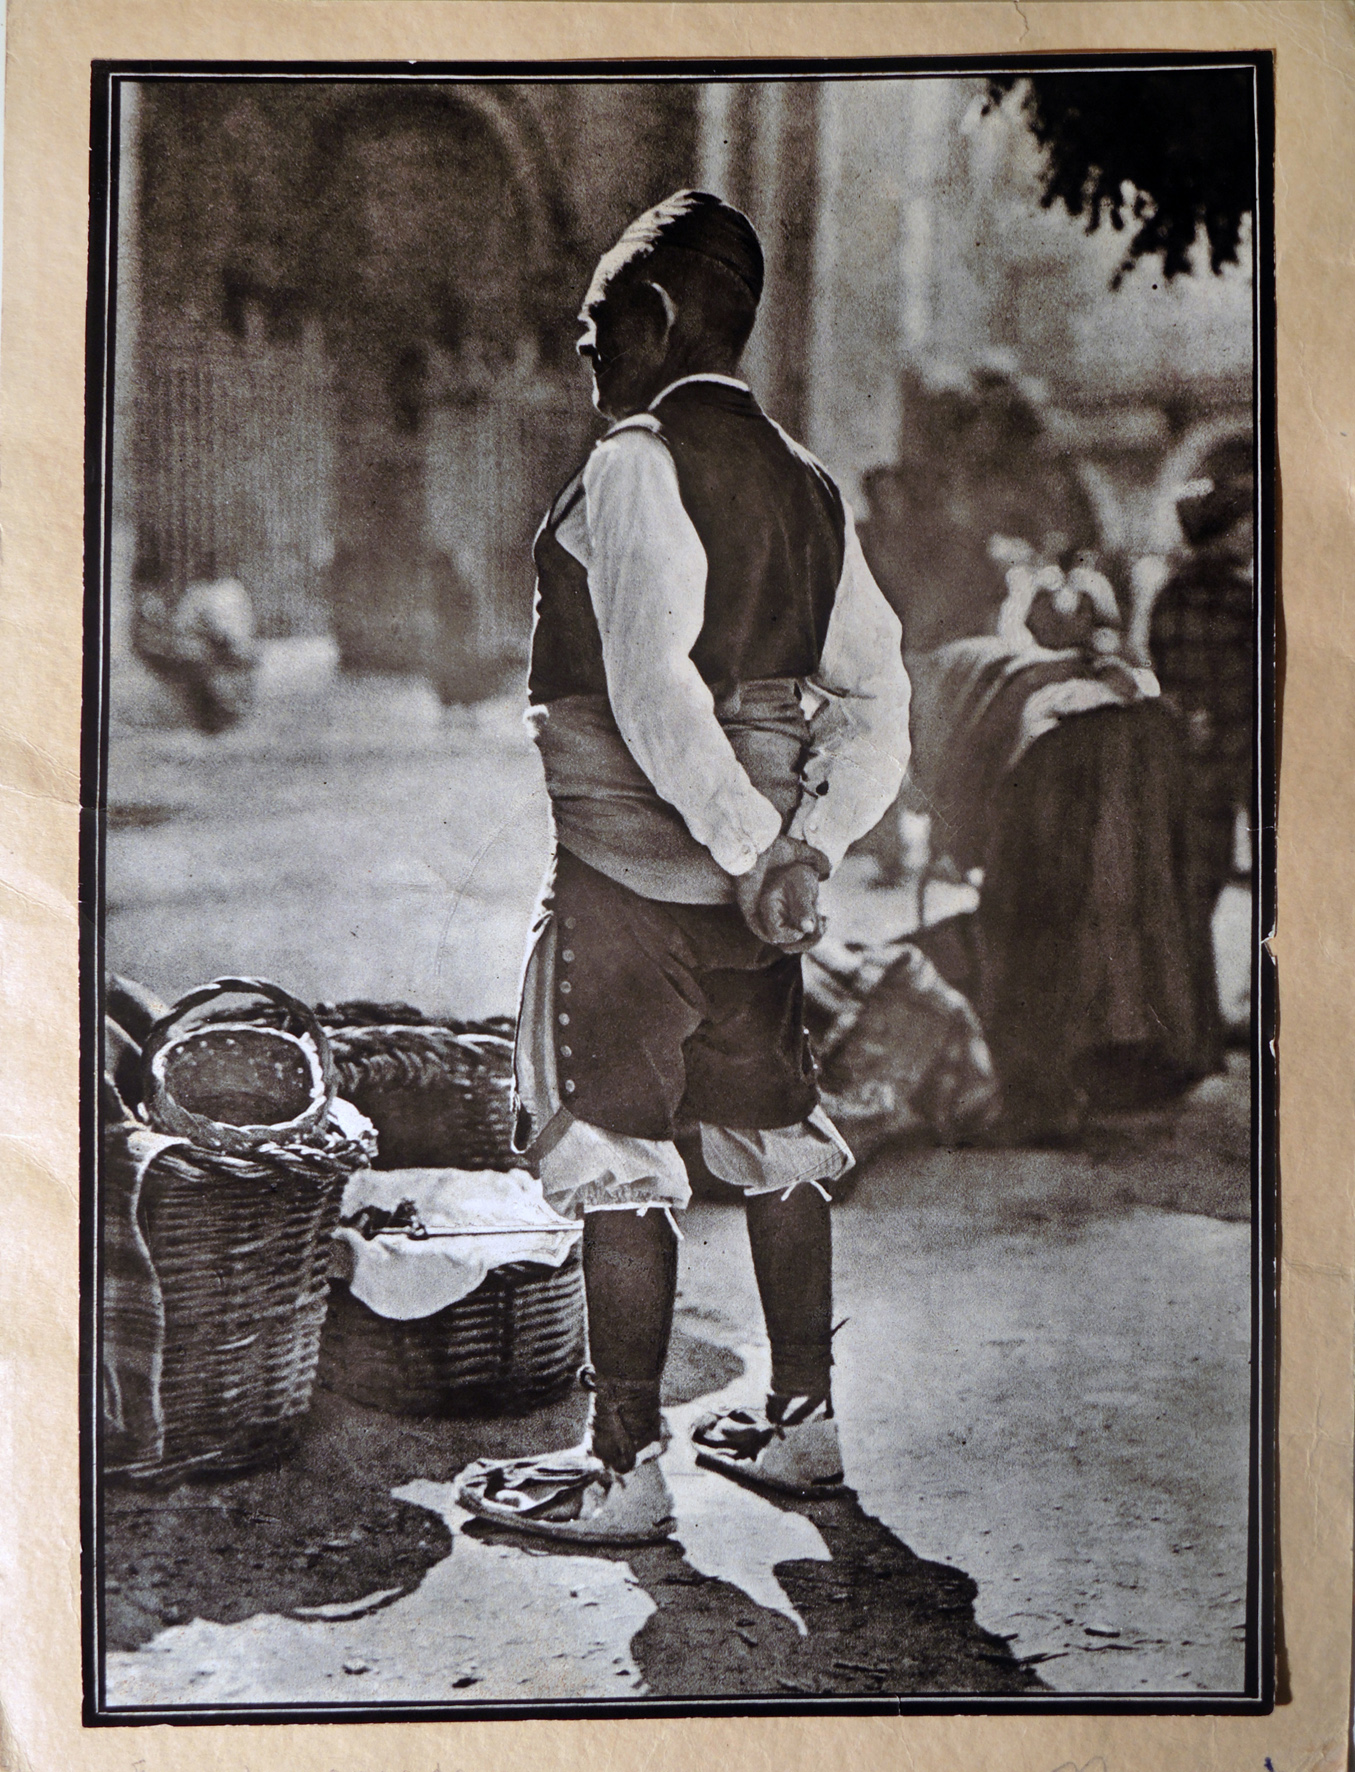 Fotografía de Gil Marraco premiada en el Salón de Londres de 1930.